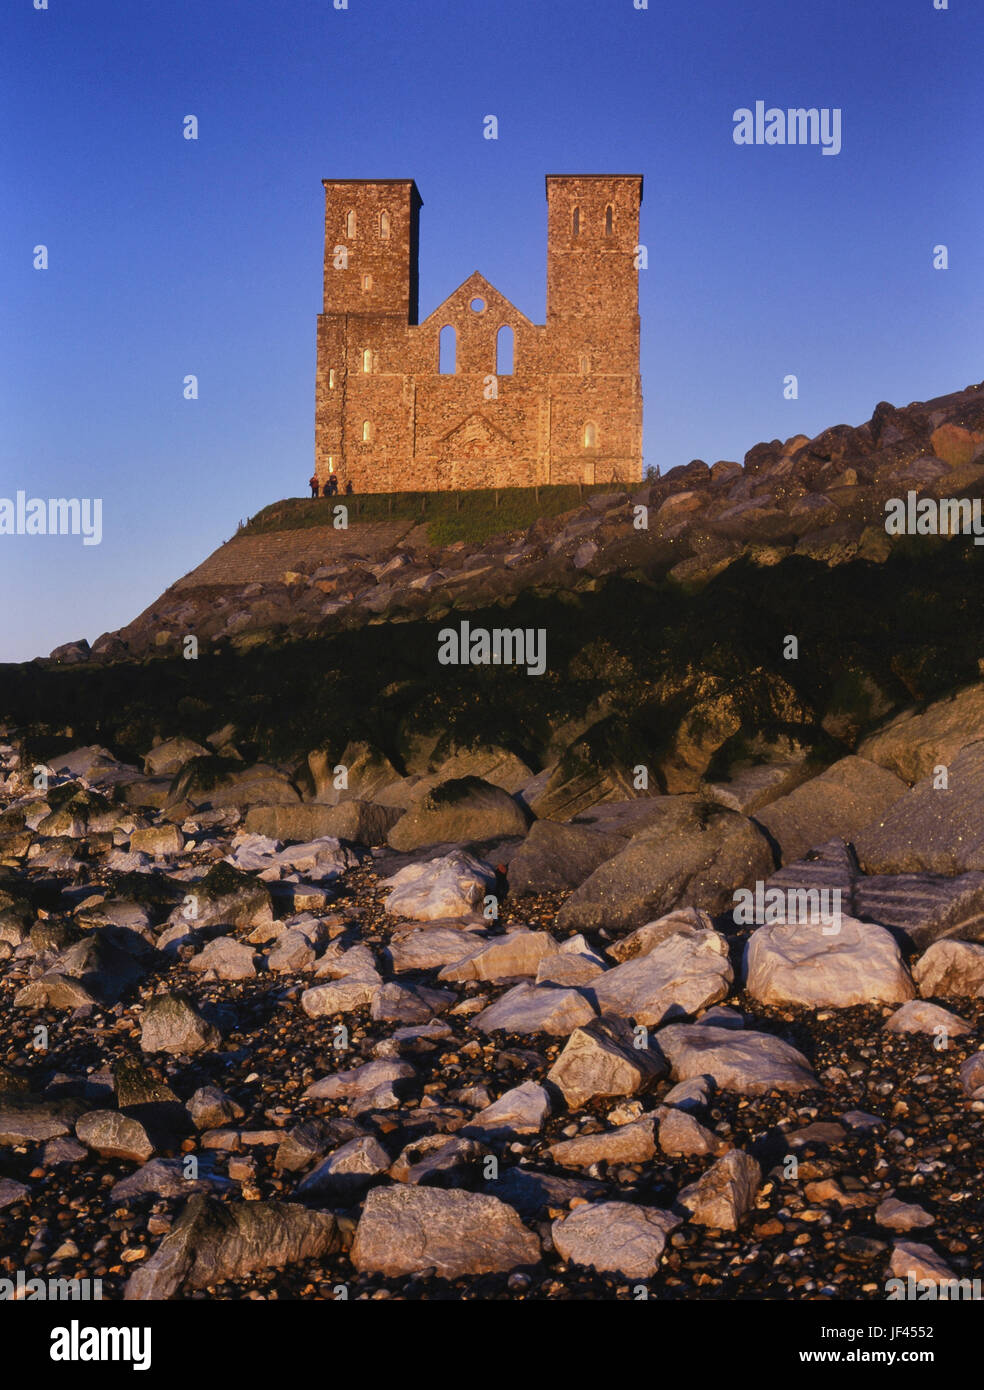 Le imponenti torri gemelle della chiesa medievale di Reculver dominano lo skyline di Herne Bay, Kent, England, Regno Unito Foto Stock